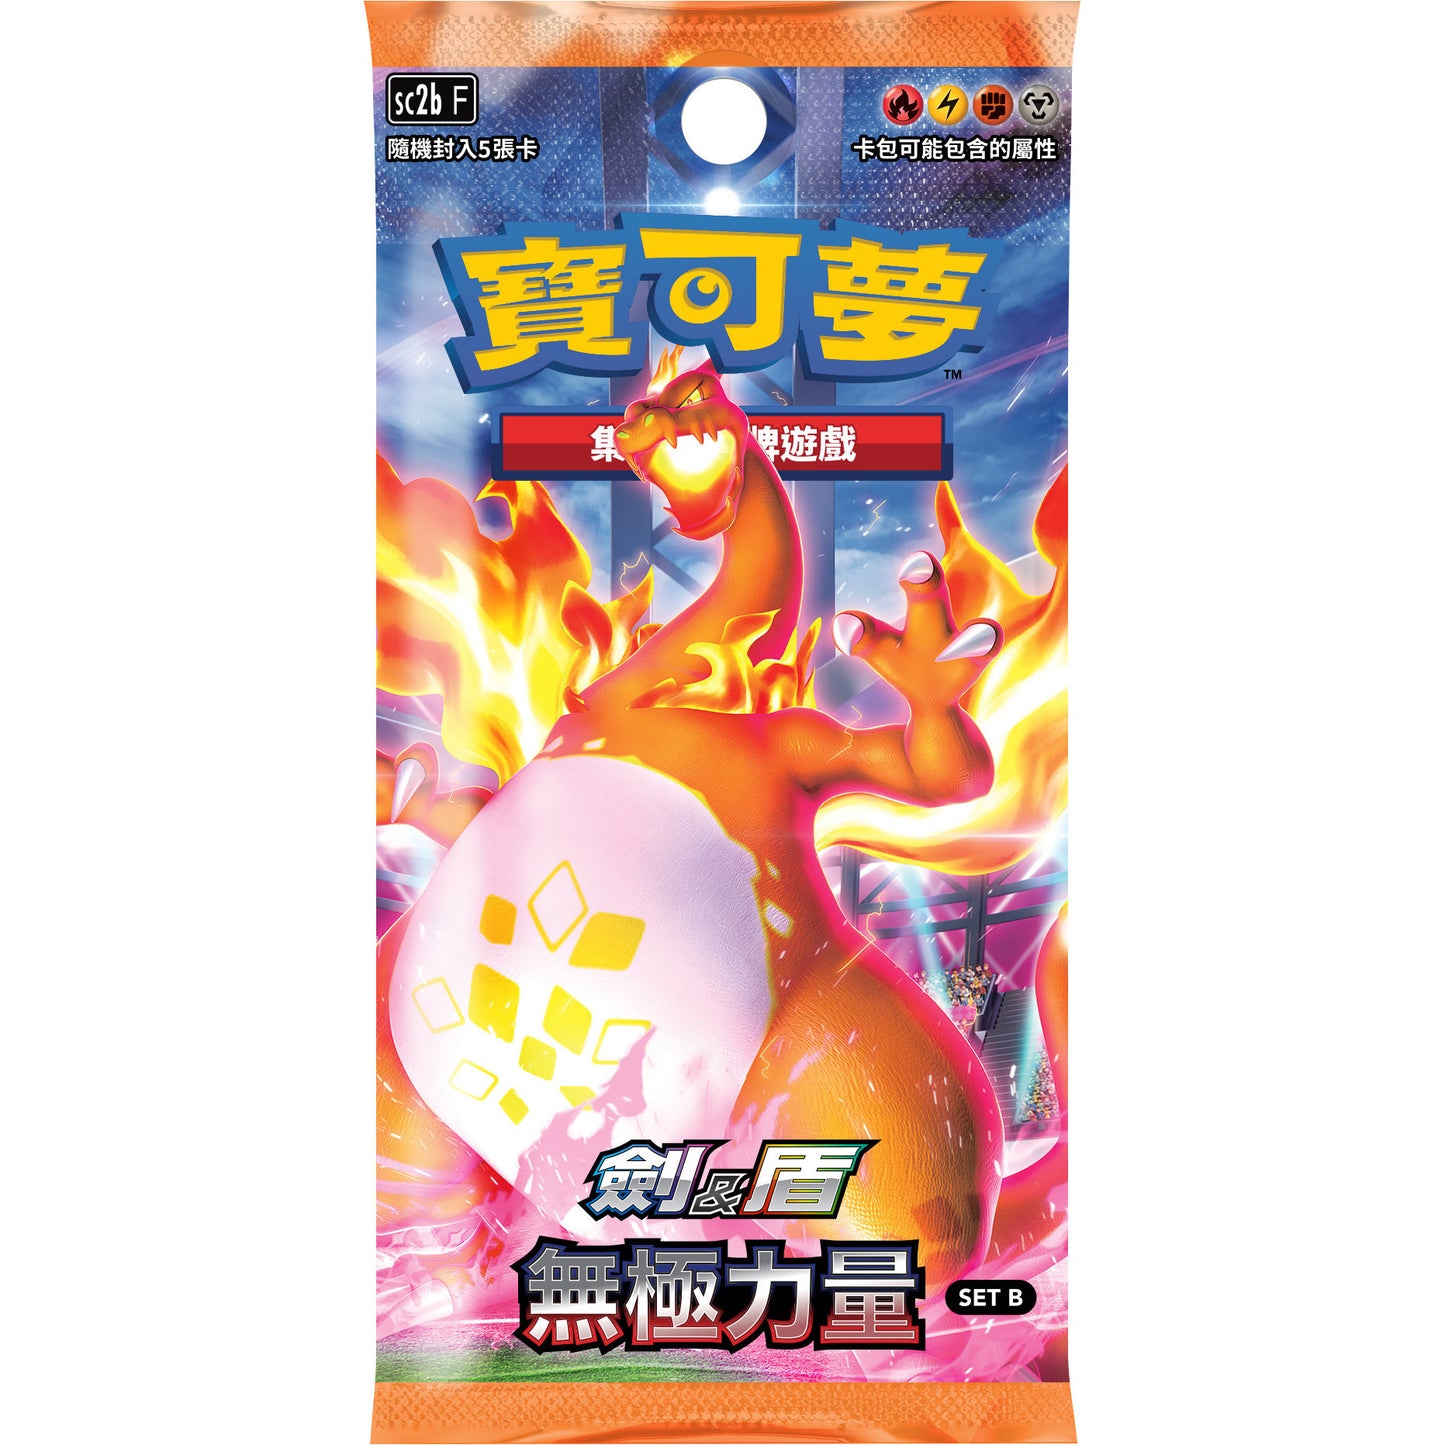 Chinese Pokemon Infinite Power B Booster Pack Charizard VMAX